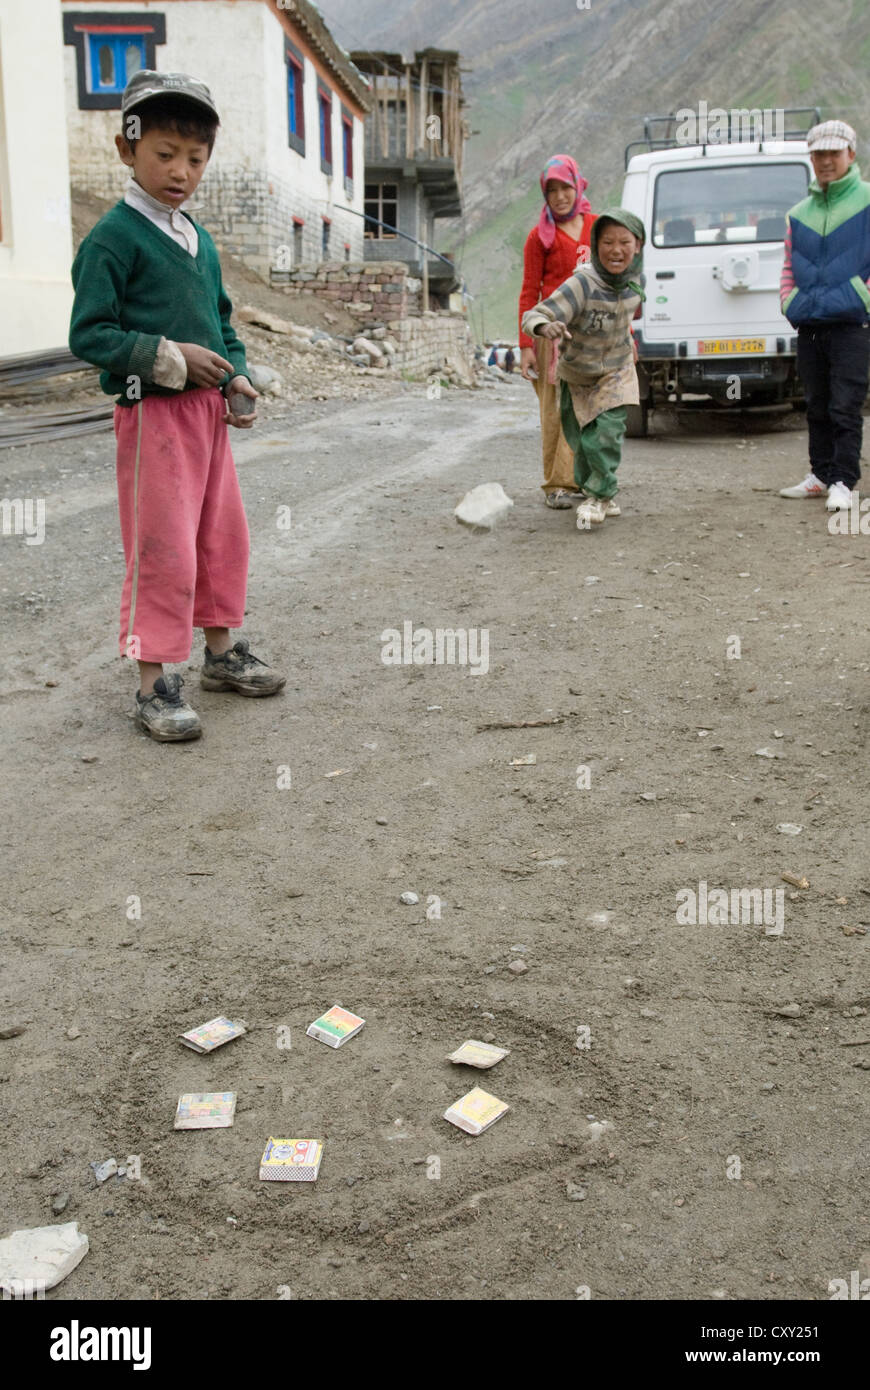 Kinder spielen Steinwürfe auf Streichholzschachteln in Schlamm Dorf, Spiti, Nordindien Stockfoto